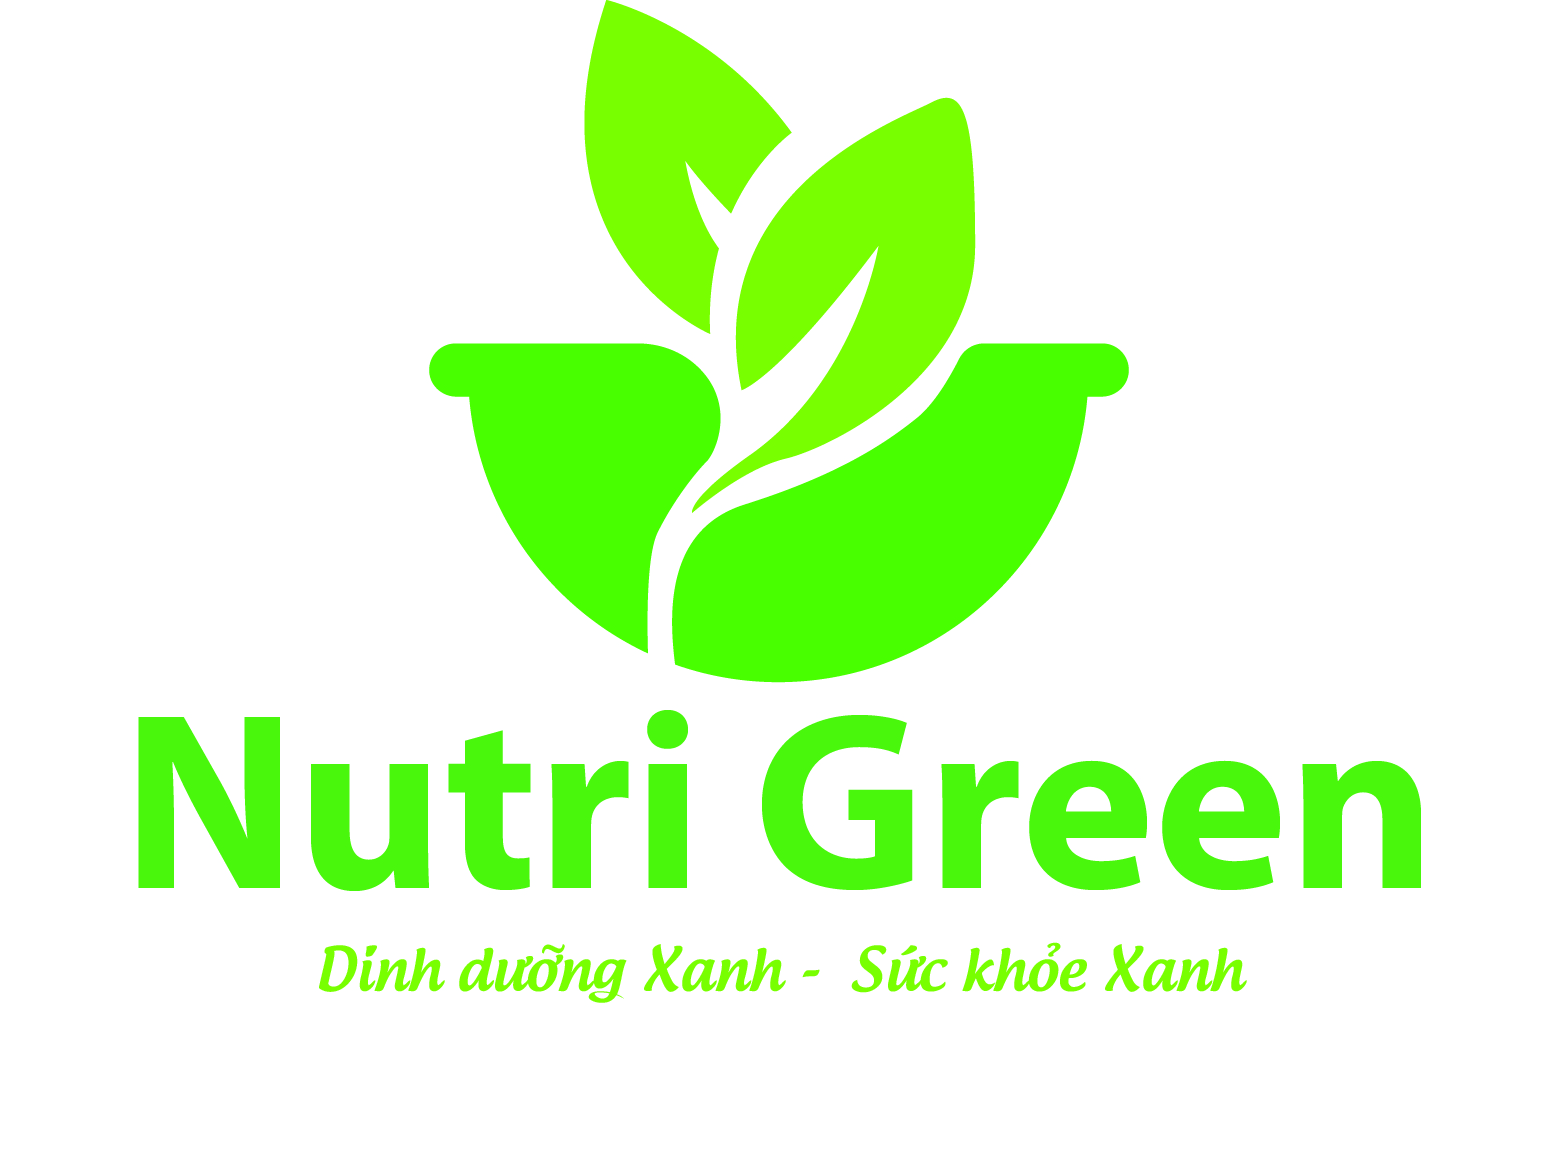 Nutri Green – Dinh dưỡng Xanh